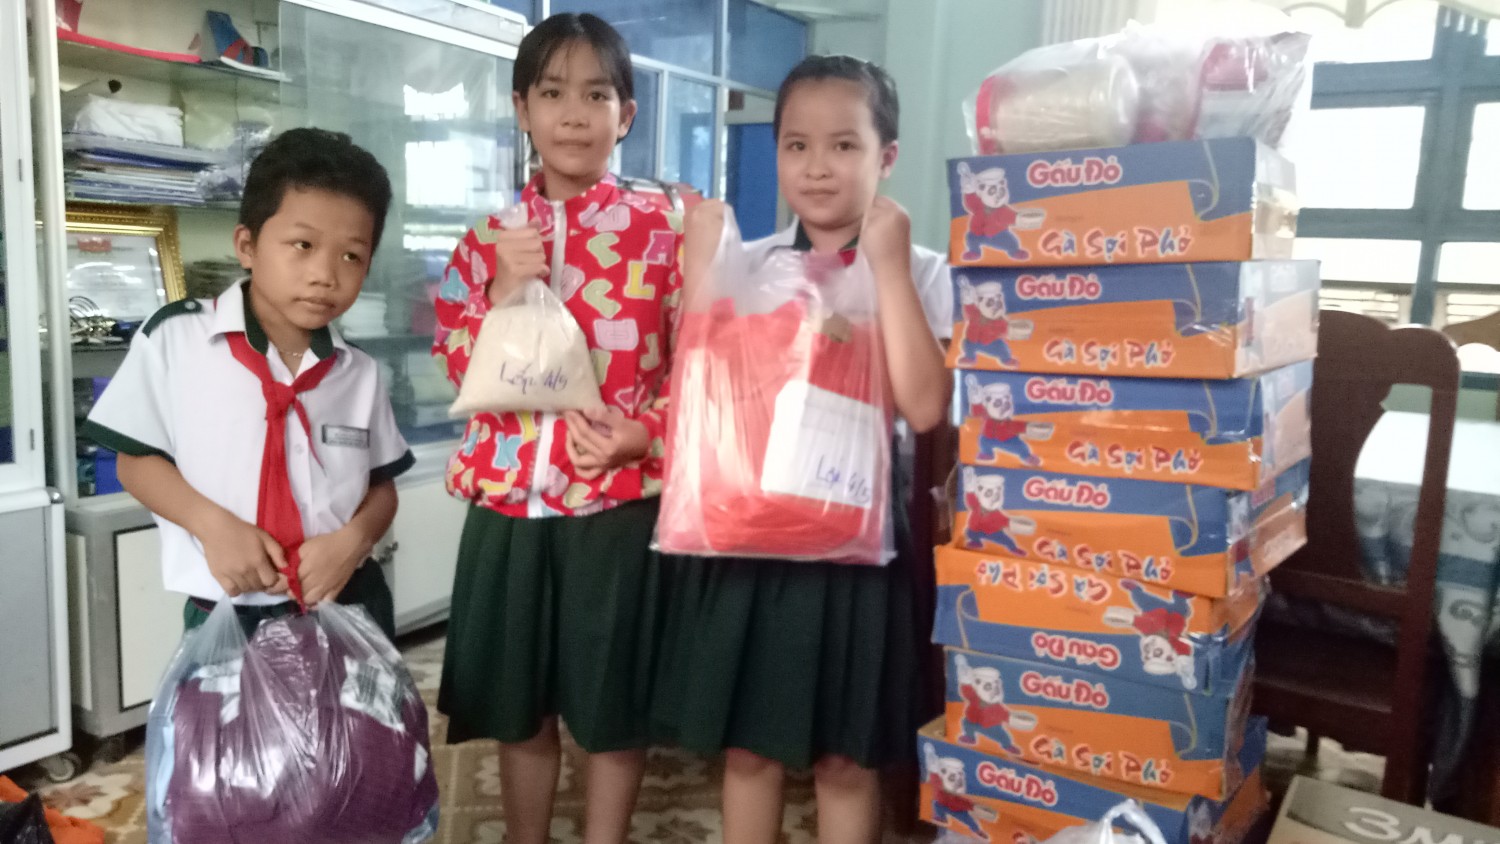 Kim Đồng tổ chức quyên góp ủng hộ các em học sinh miền núi Tỉnh Quảng Nam